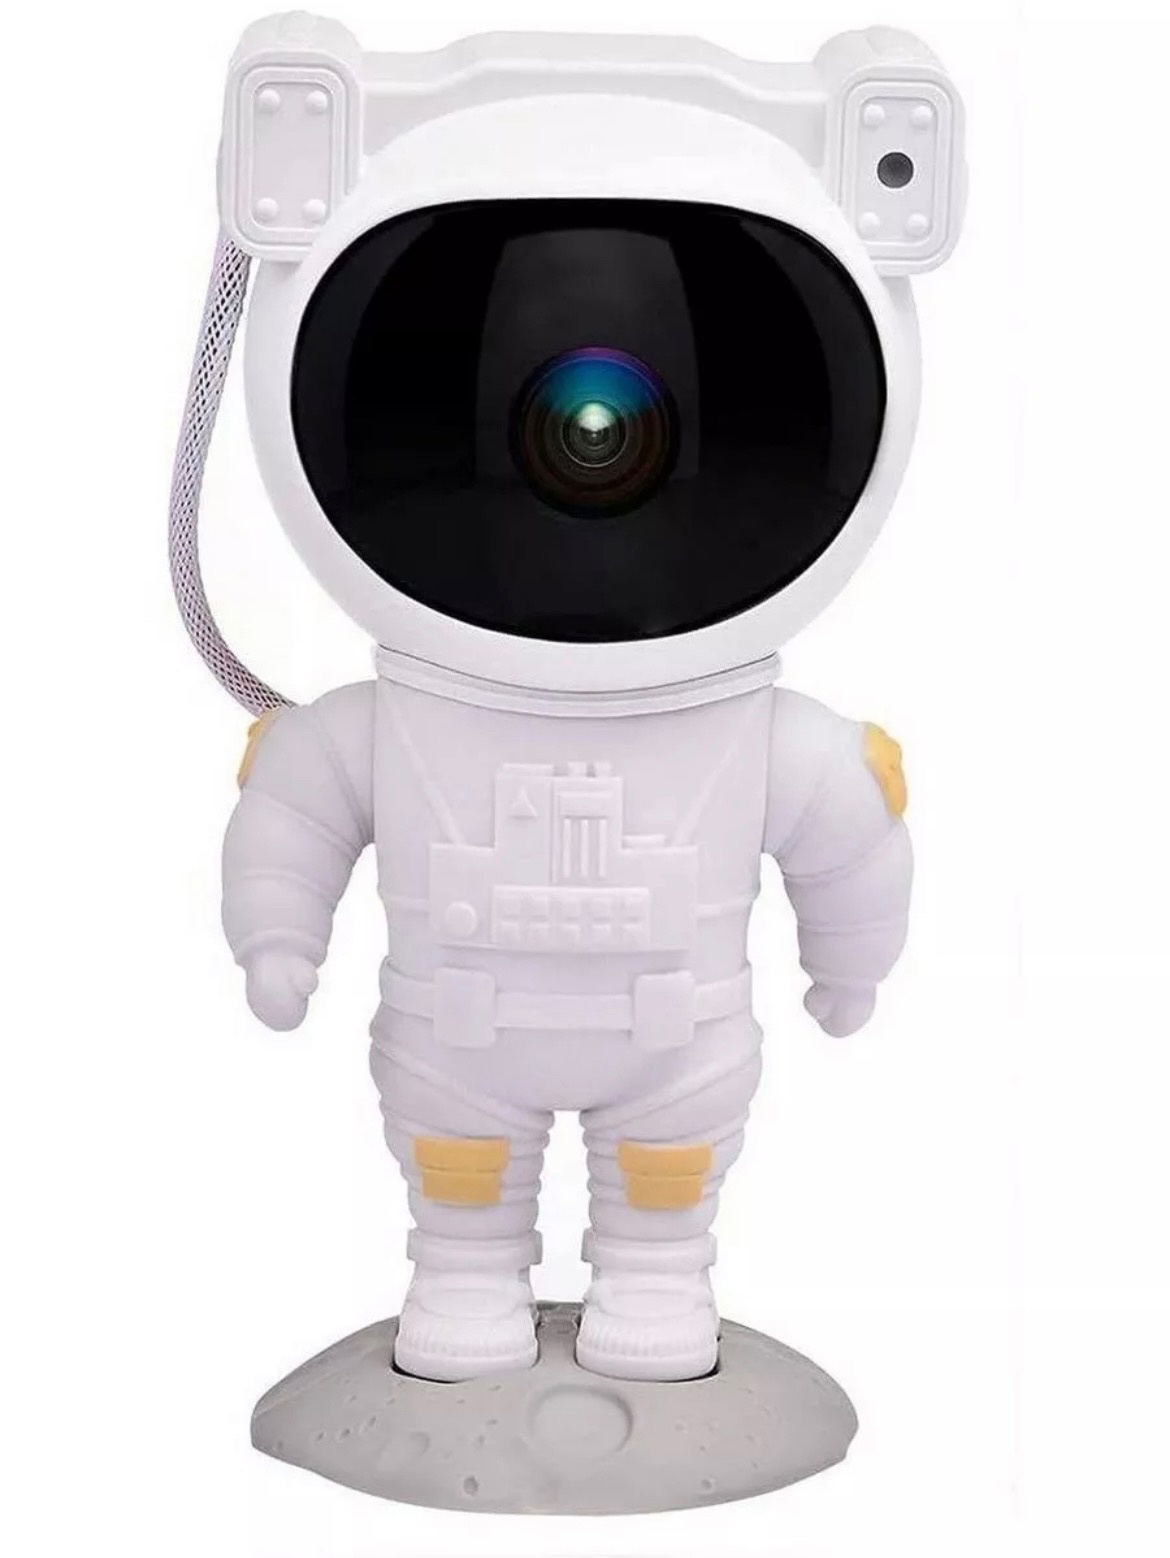 Ночник-проектор Shop for you робот-космонавт, звездное небо, белый